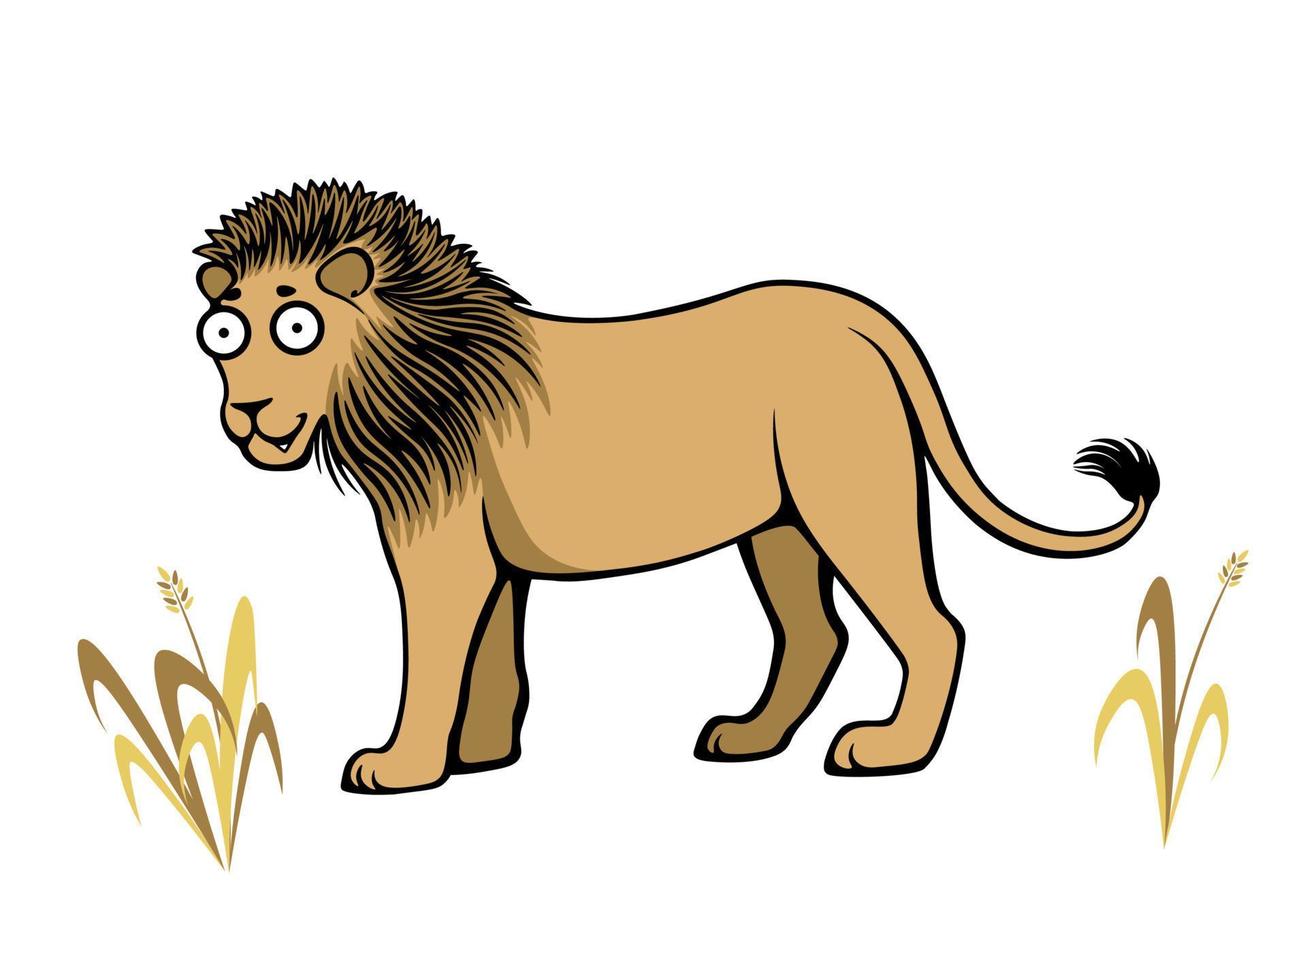 mignon lion insouciant marchant dans l'herbe sèche vecteur